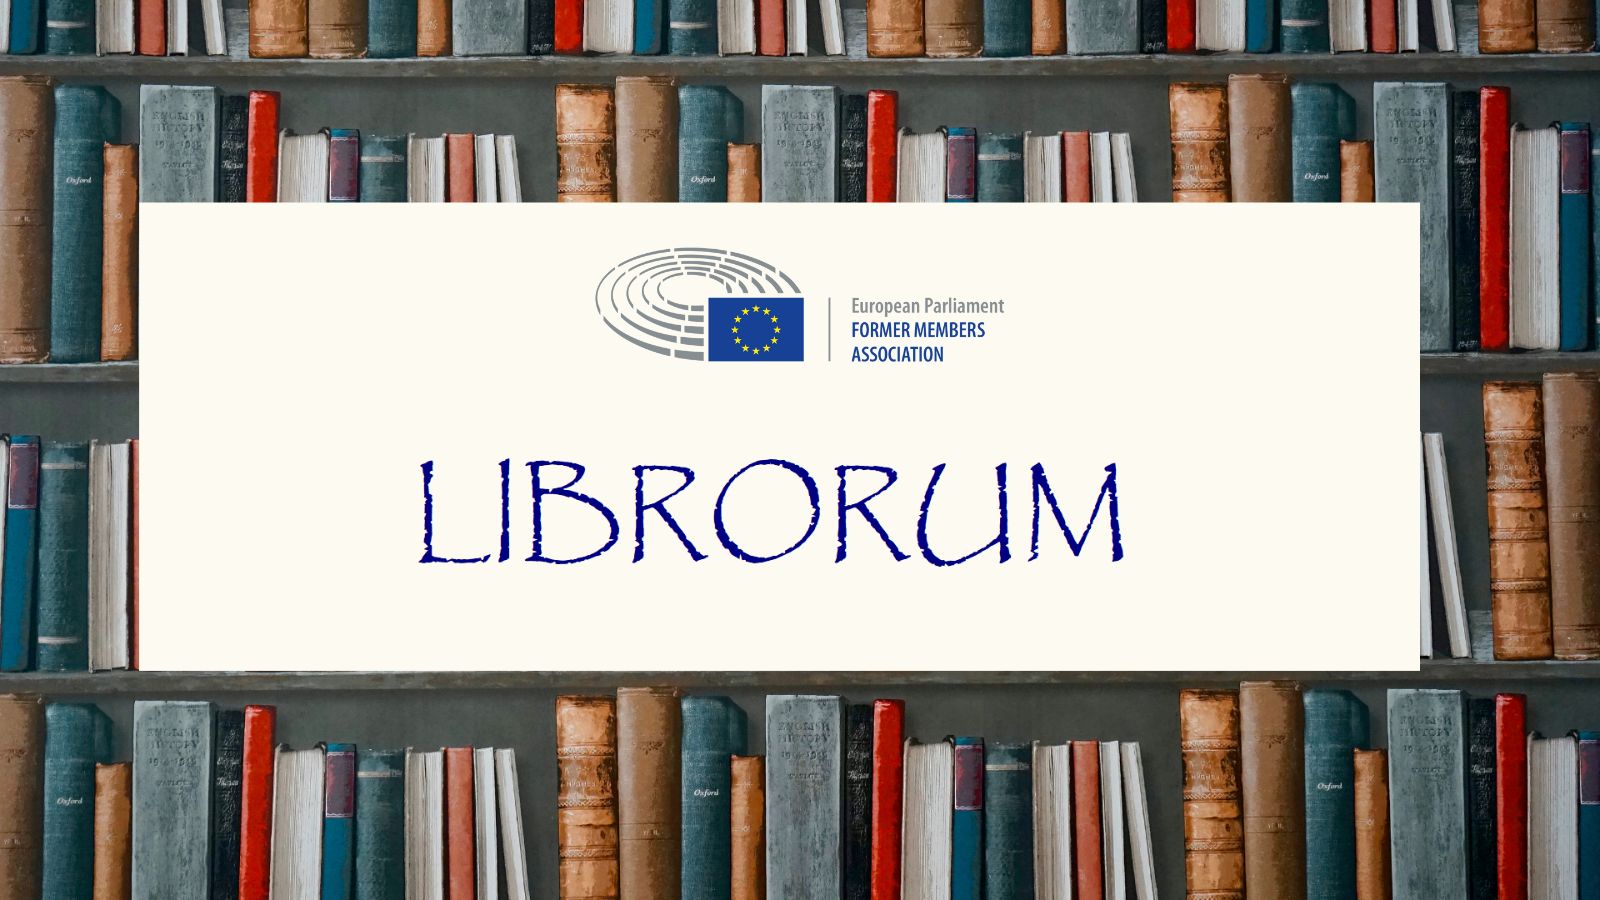 Librorum event